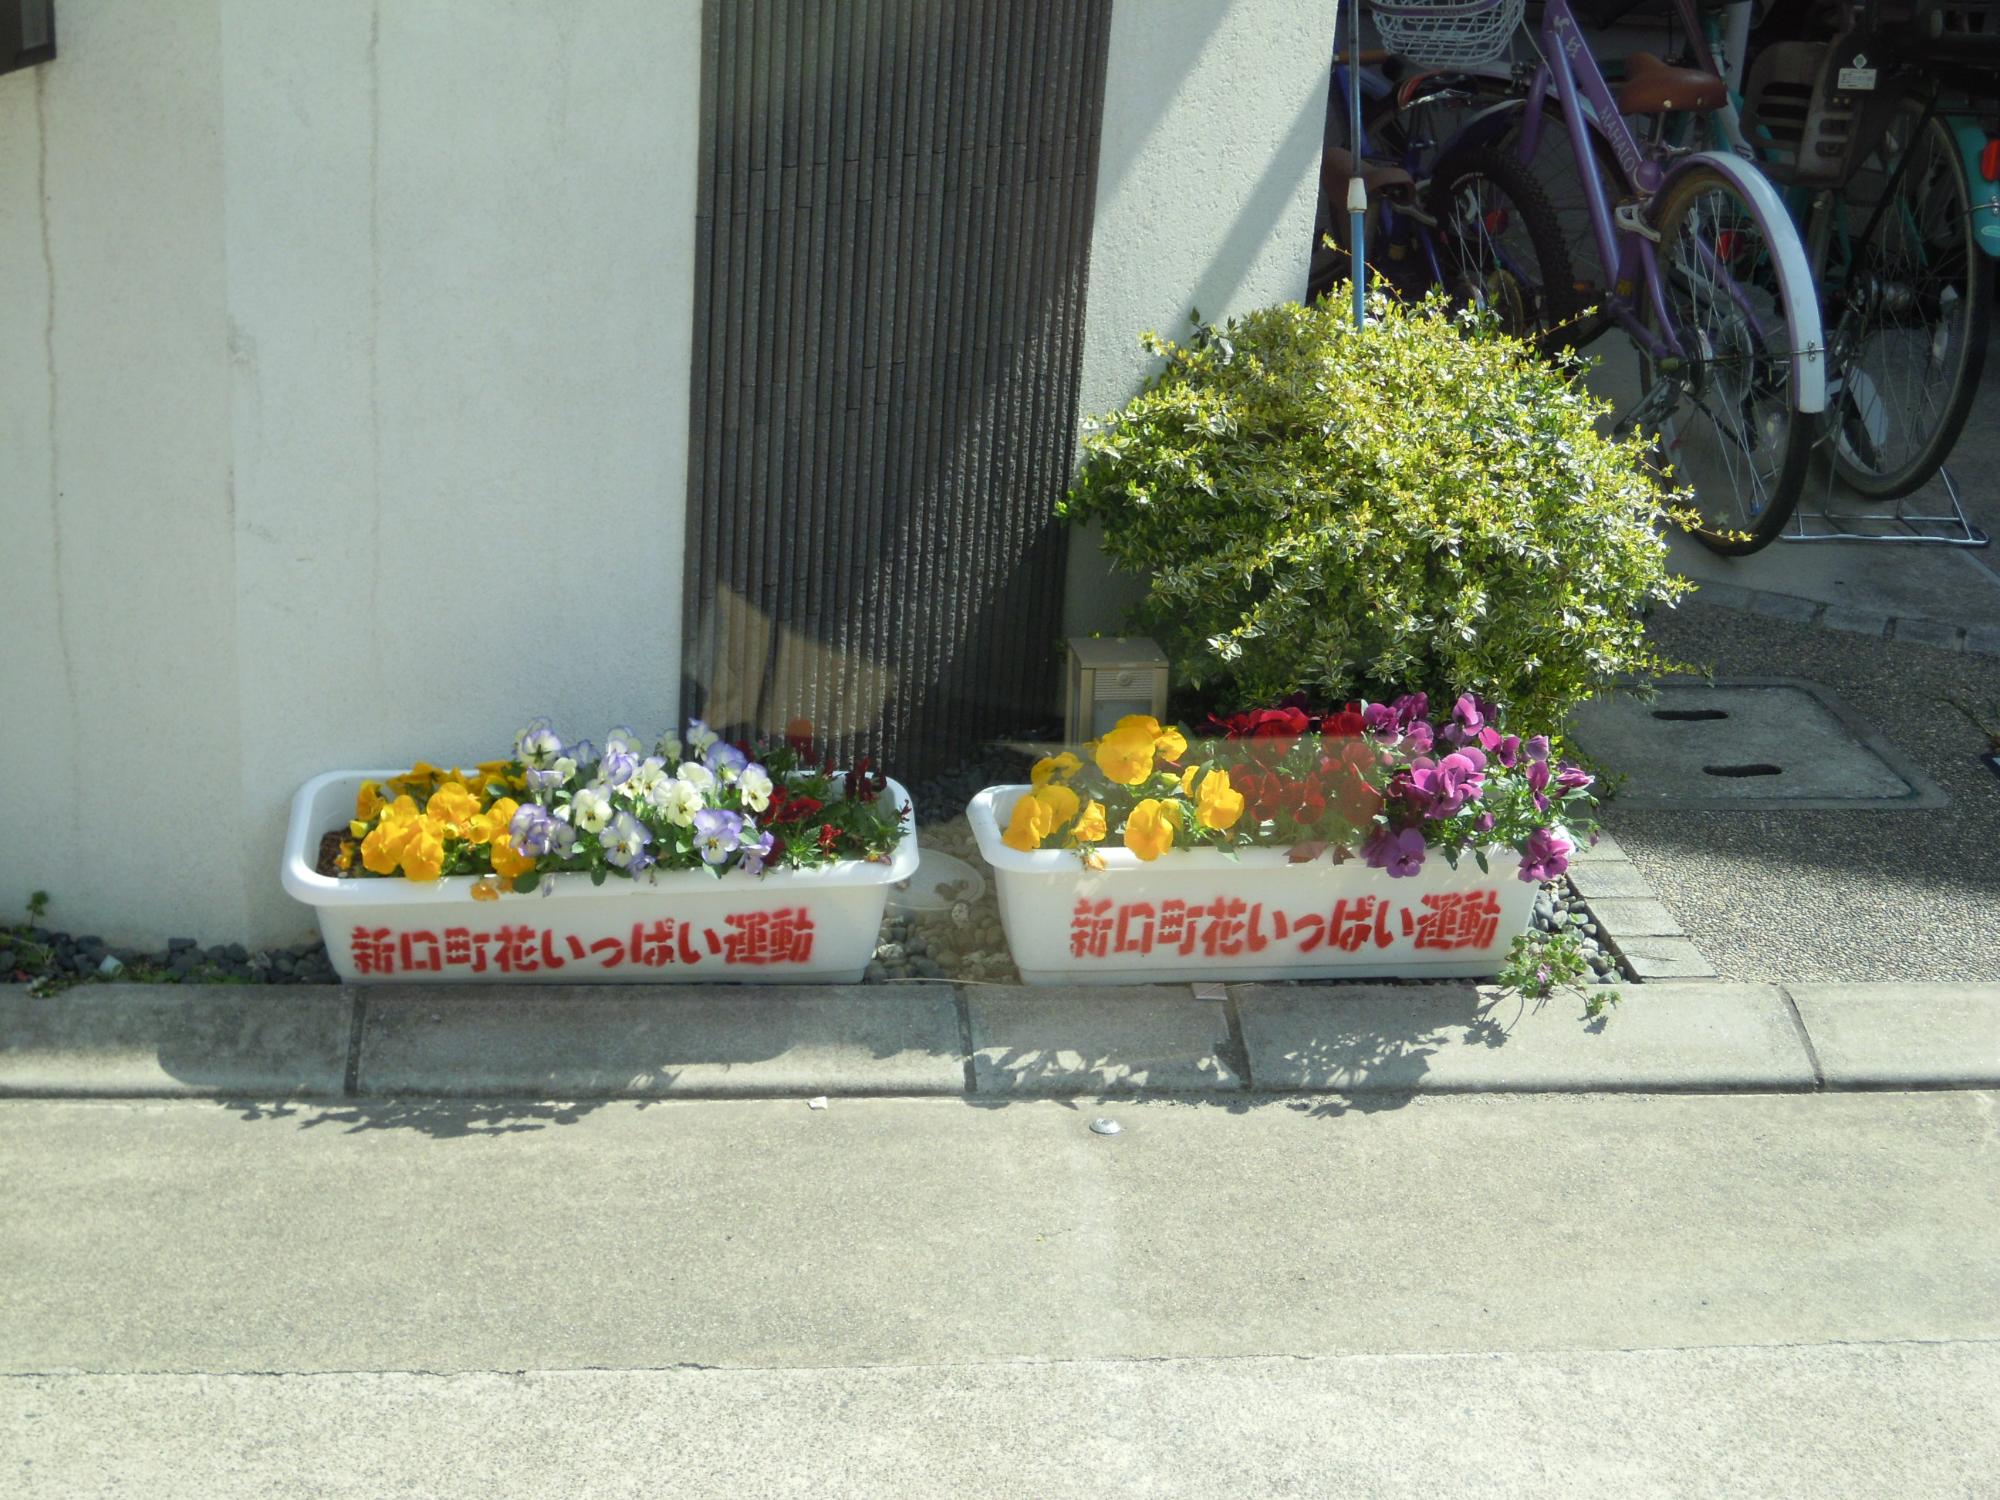 新口町会員自宅前で色とりどりの花が咲いている「新口町花いっぱい運動」と書いてある植木鉢2つの写真